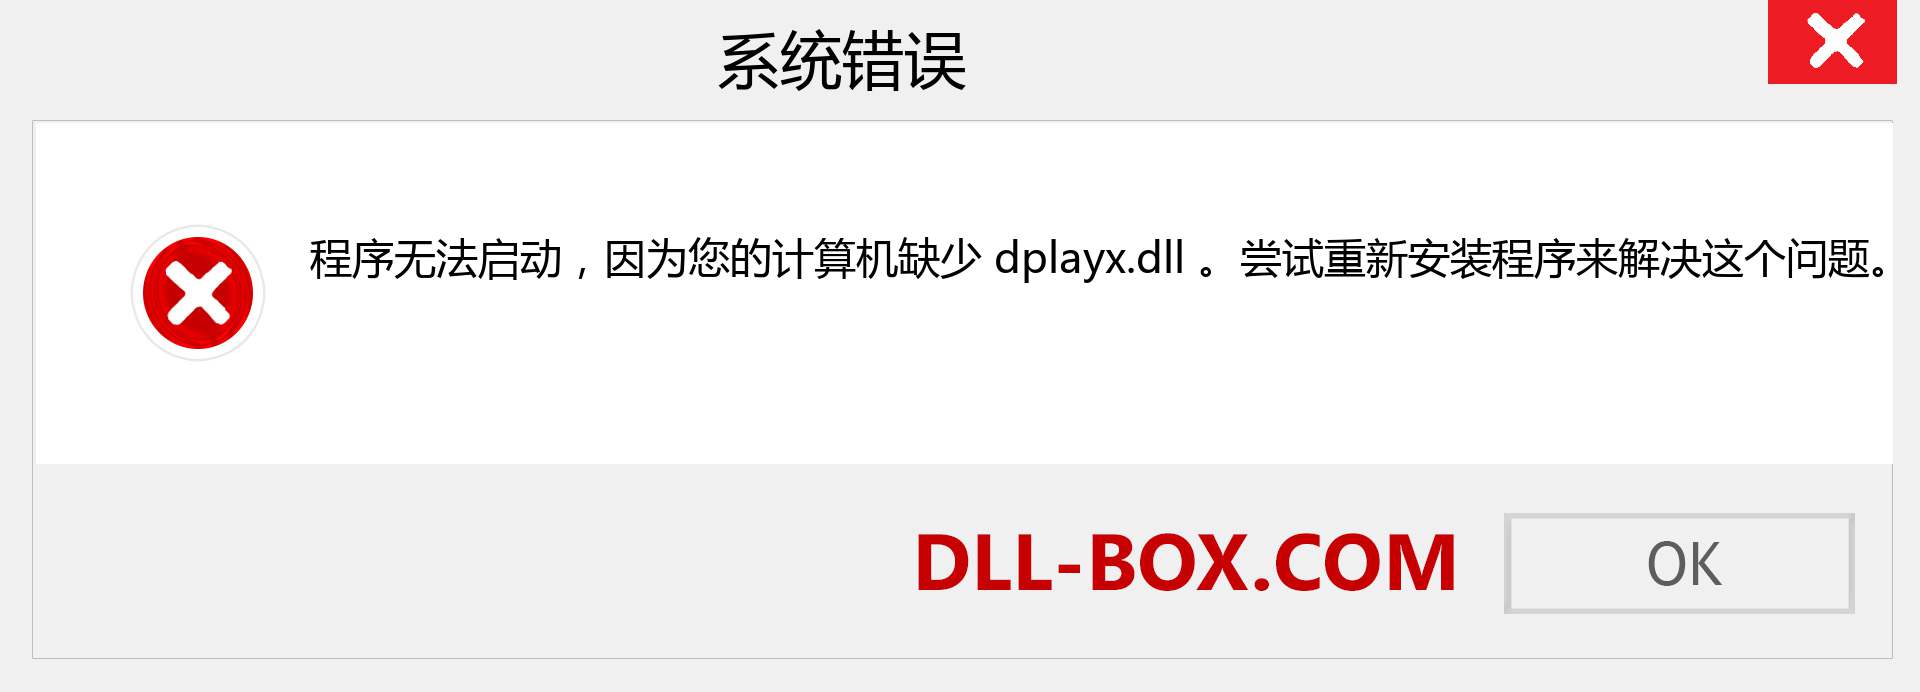 dplayx.dll 文件丢失？。 适用于 Windows 7、8、10 的下载 - 修复 Windows、照片、图像上的 dplayx dll 丢失错误